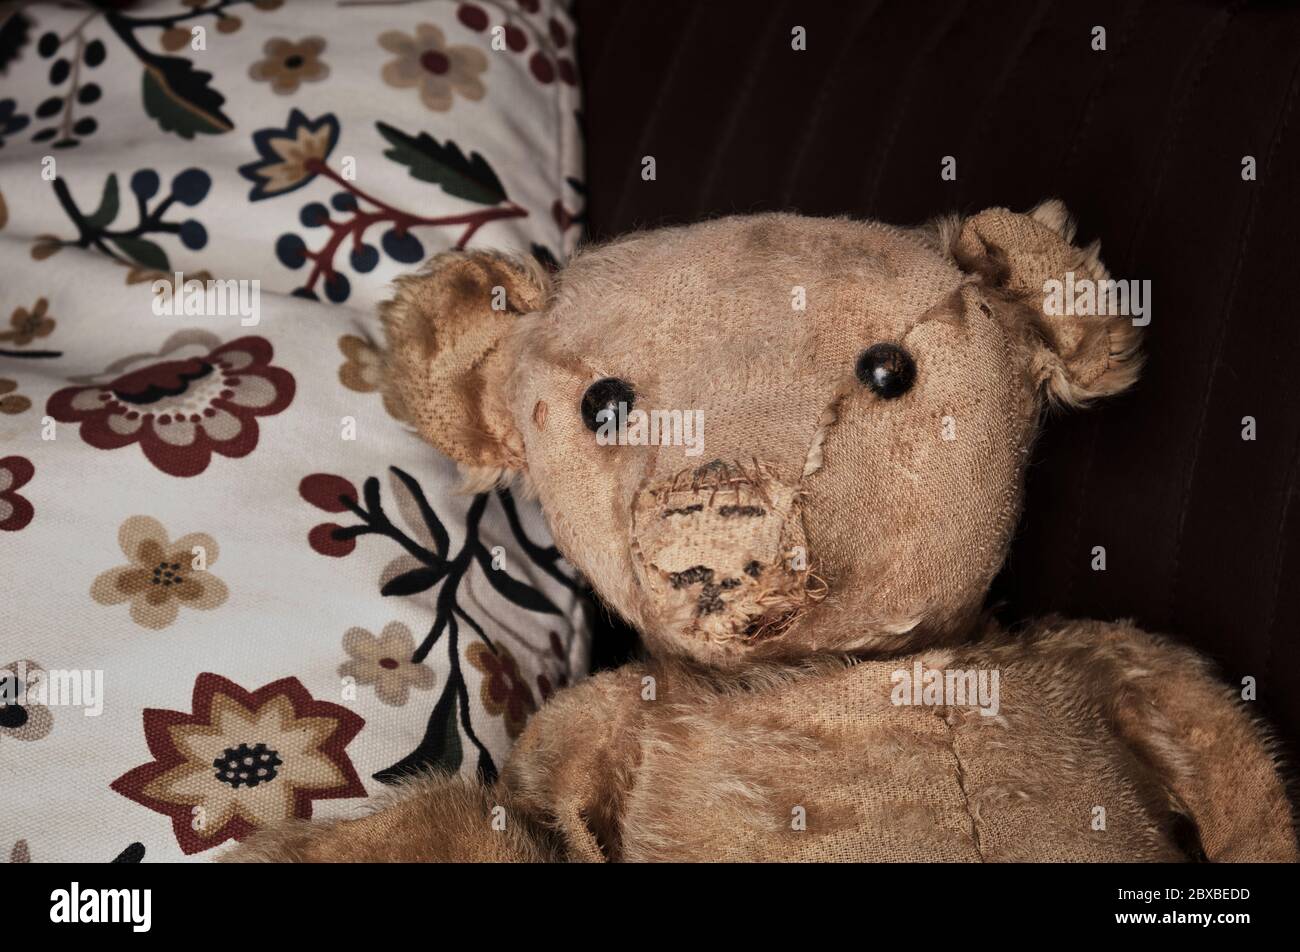 Un ours en peluche usé et bien utilisé au tournant des années 1900. Probablement un ours en peluche original assis sur des oreillers regardant l'appareil photo. Banque D'Images